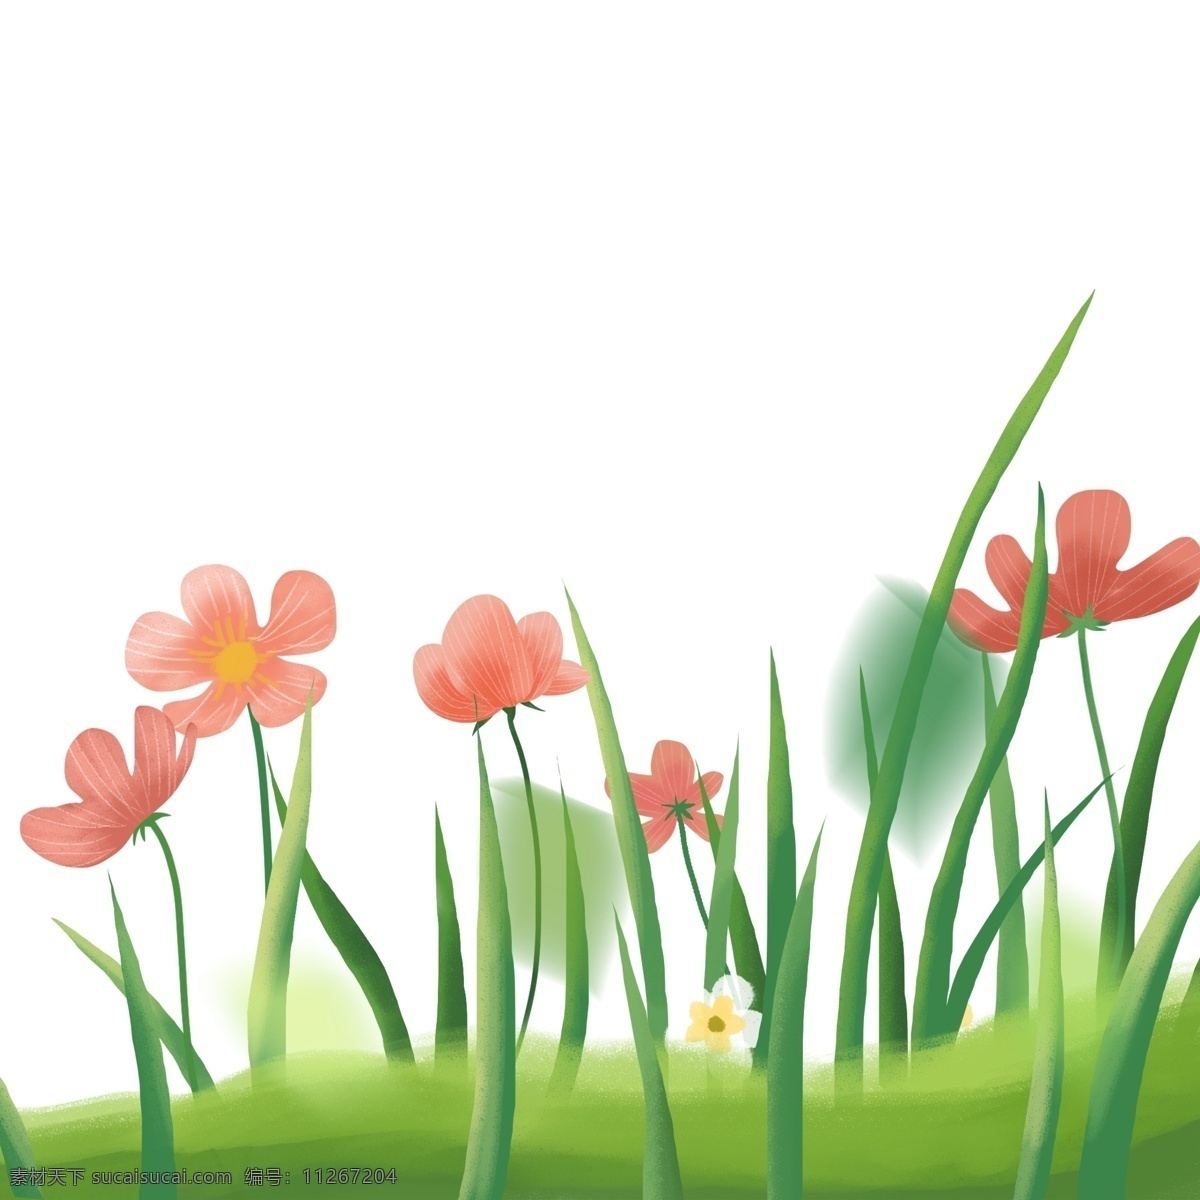 植物 草丛 花草 装饰 花朵 手绘 绘画 卡通 简约 小清新 彩色